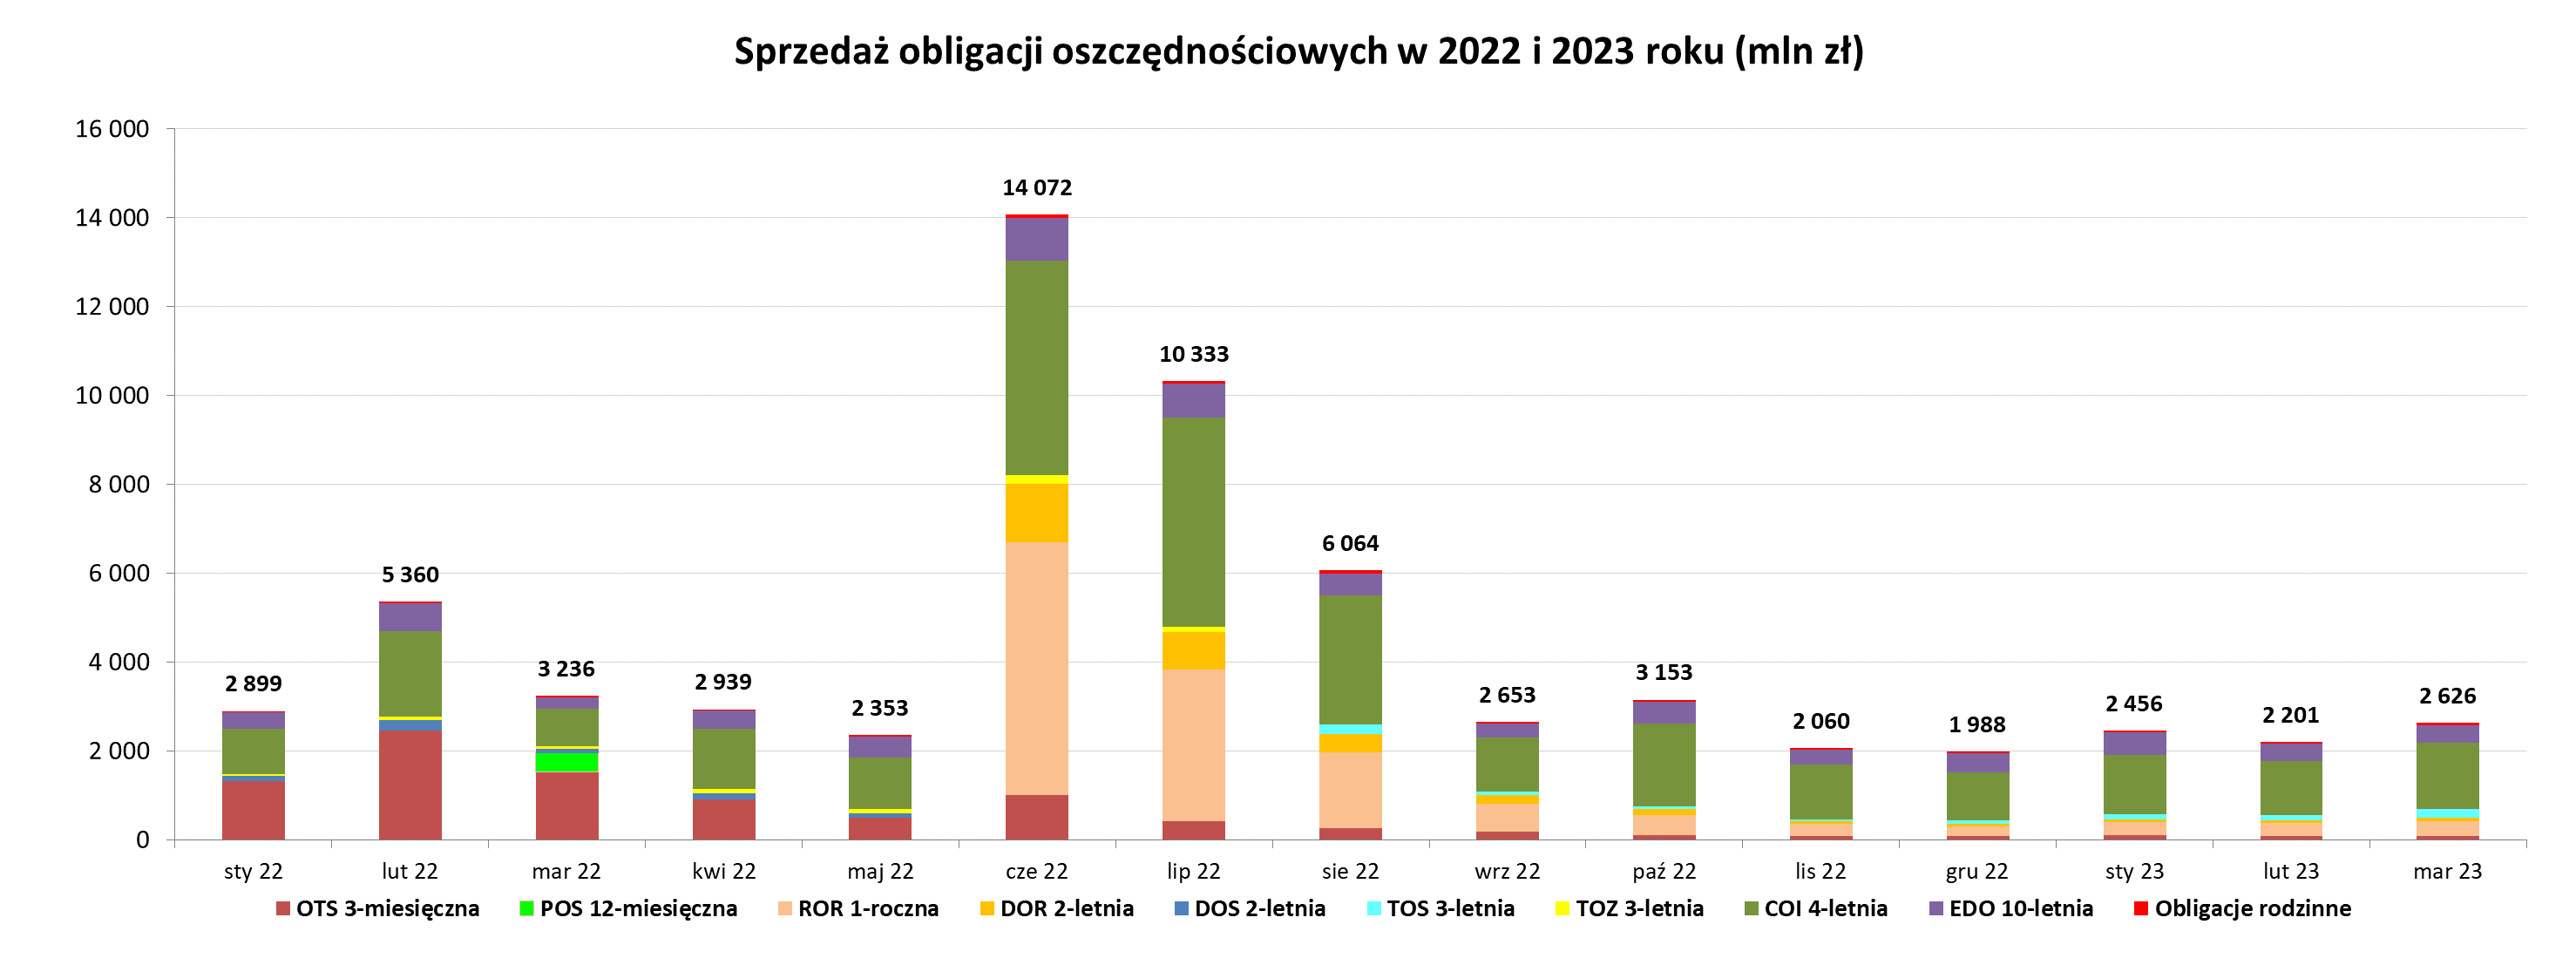 Wykres słupkowy przedstawiający sprzedaż obligacji oszczędnościowych od stycznia 2022 do marca 2023 roku (mln)